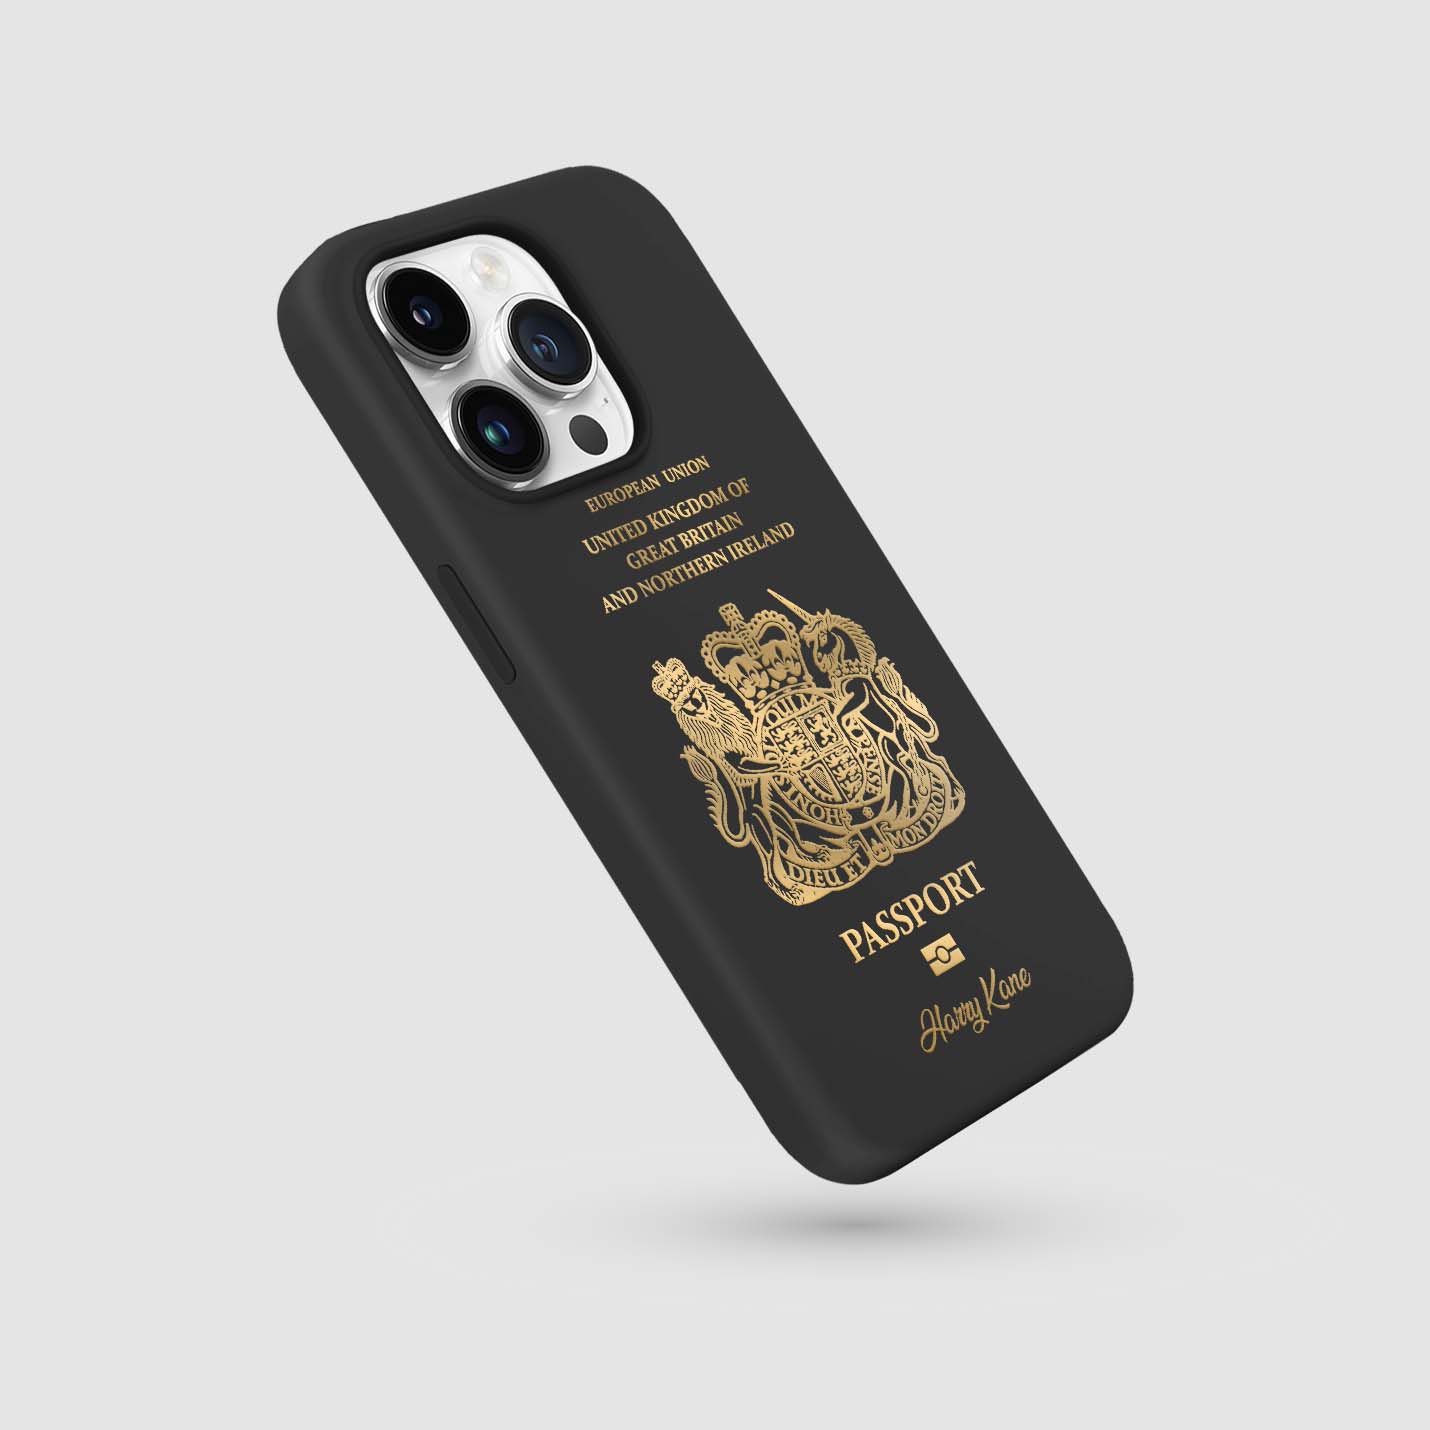 Handyhüllen mit Reisepass - Vereinigtes Königreich ( UK ) - 1instaphone